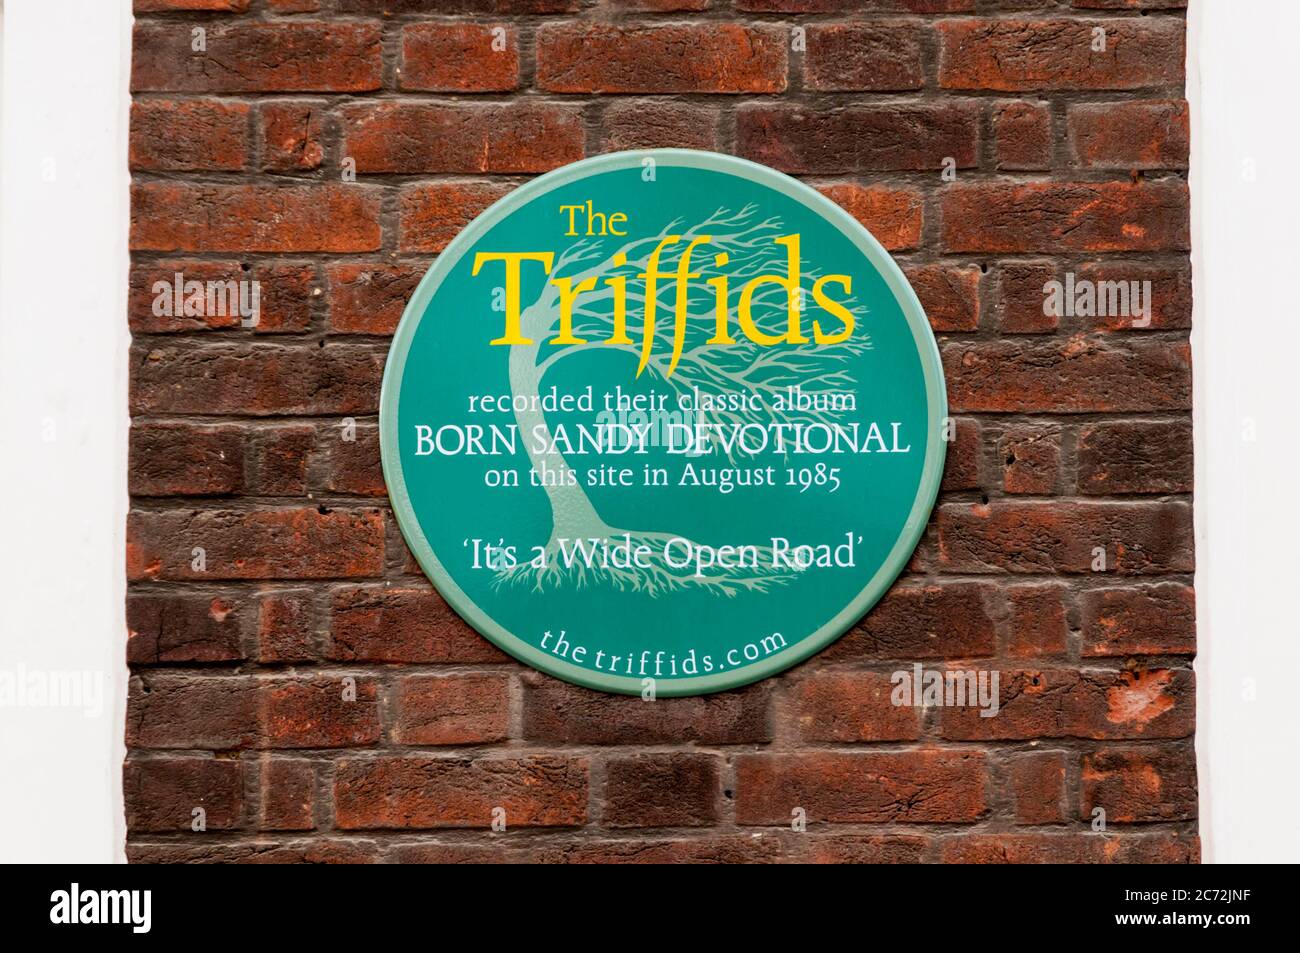 Eine grüne Plakette in Britton Street Reads The Triffids nahmen ihr klassisches Album Born Sandy Devotional im August 1985 auf dieser Seite auf. Stockfoto